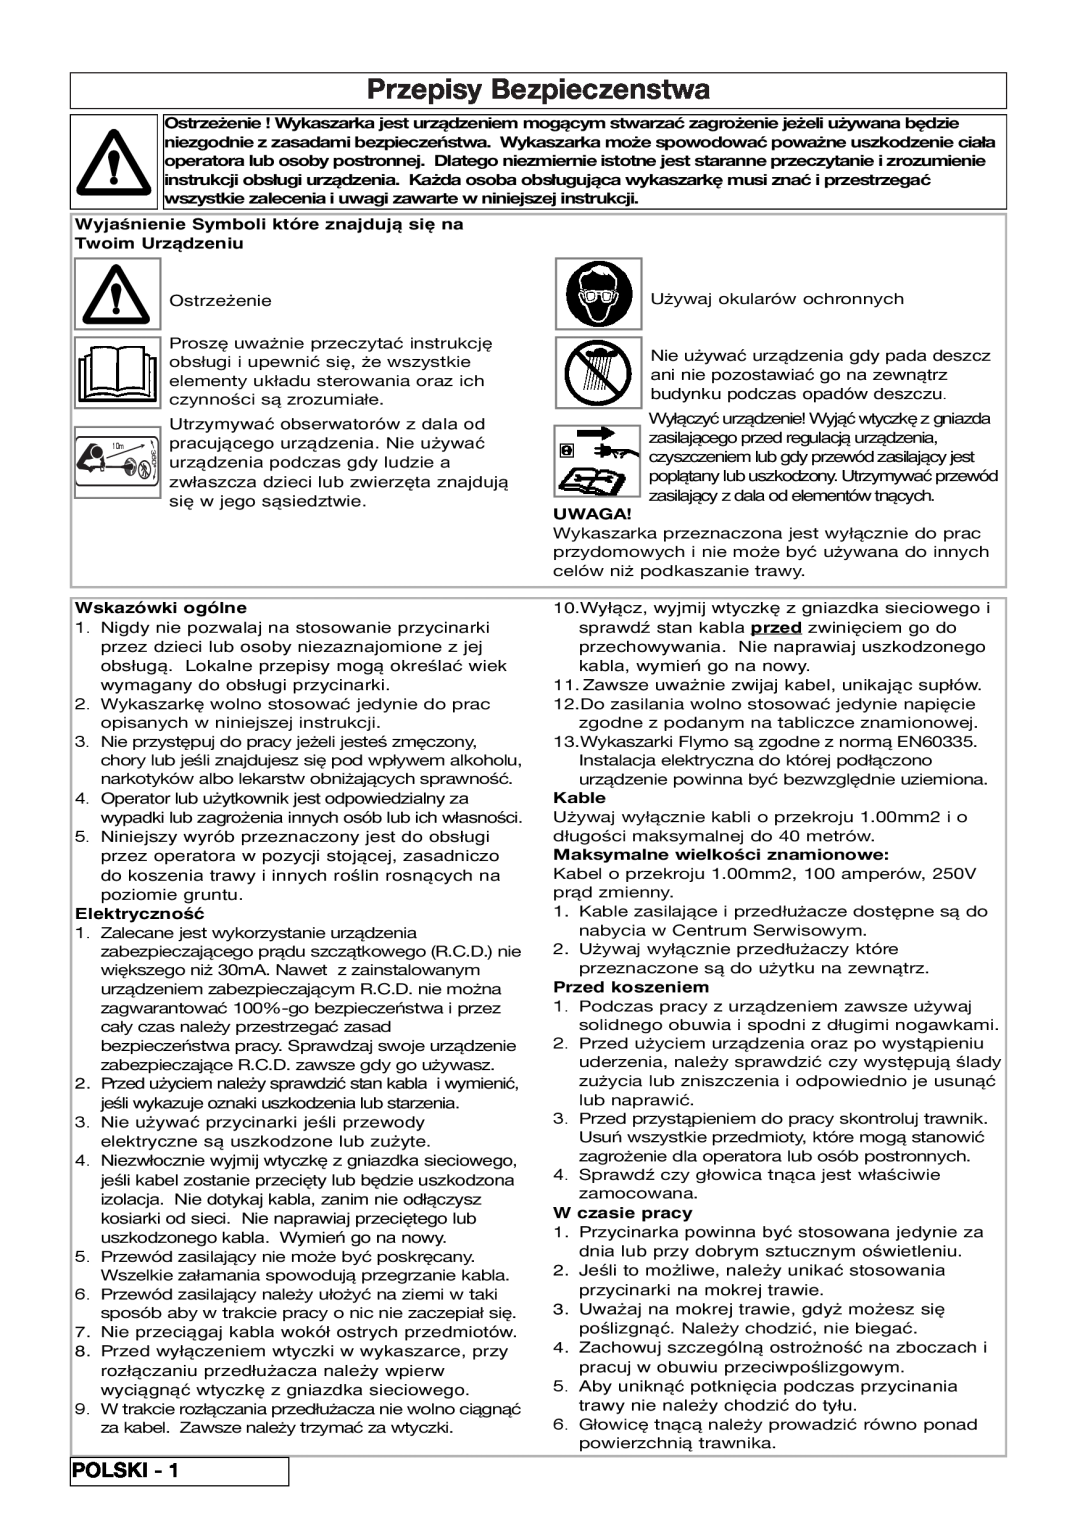 Flymo 800/1000 Przepisy Bezpieczenstwa, Polski, Wyjaśnienie Symboli które znajdują się na Twoim Urządzeniu, Uwaga, Kable 